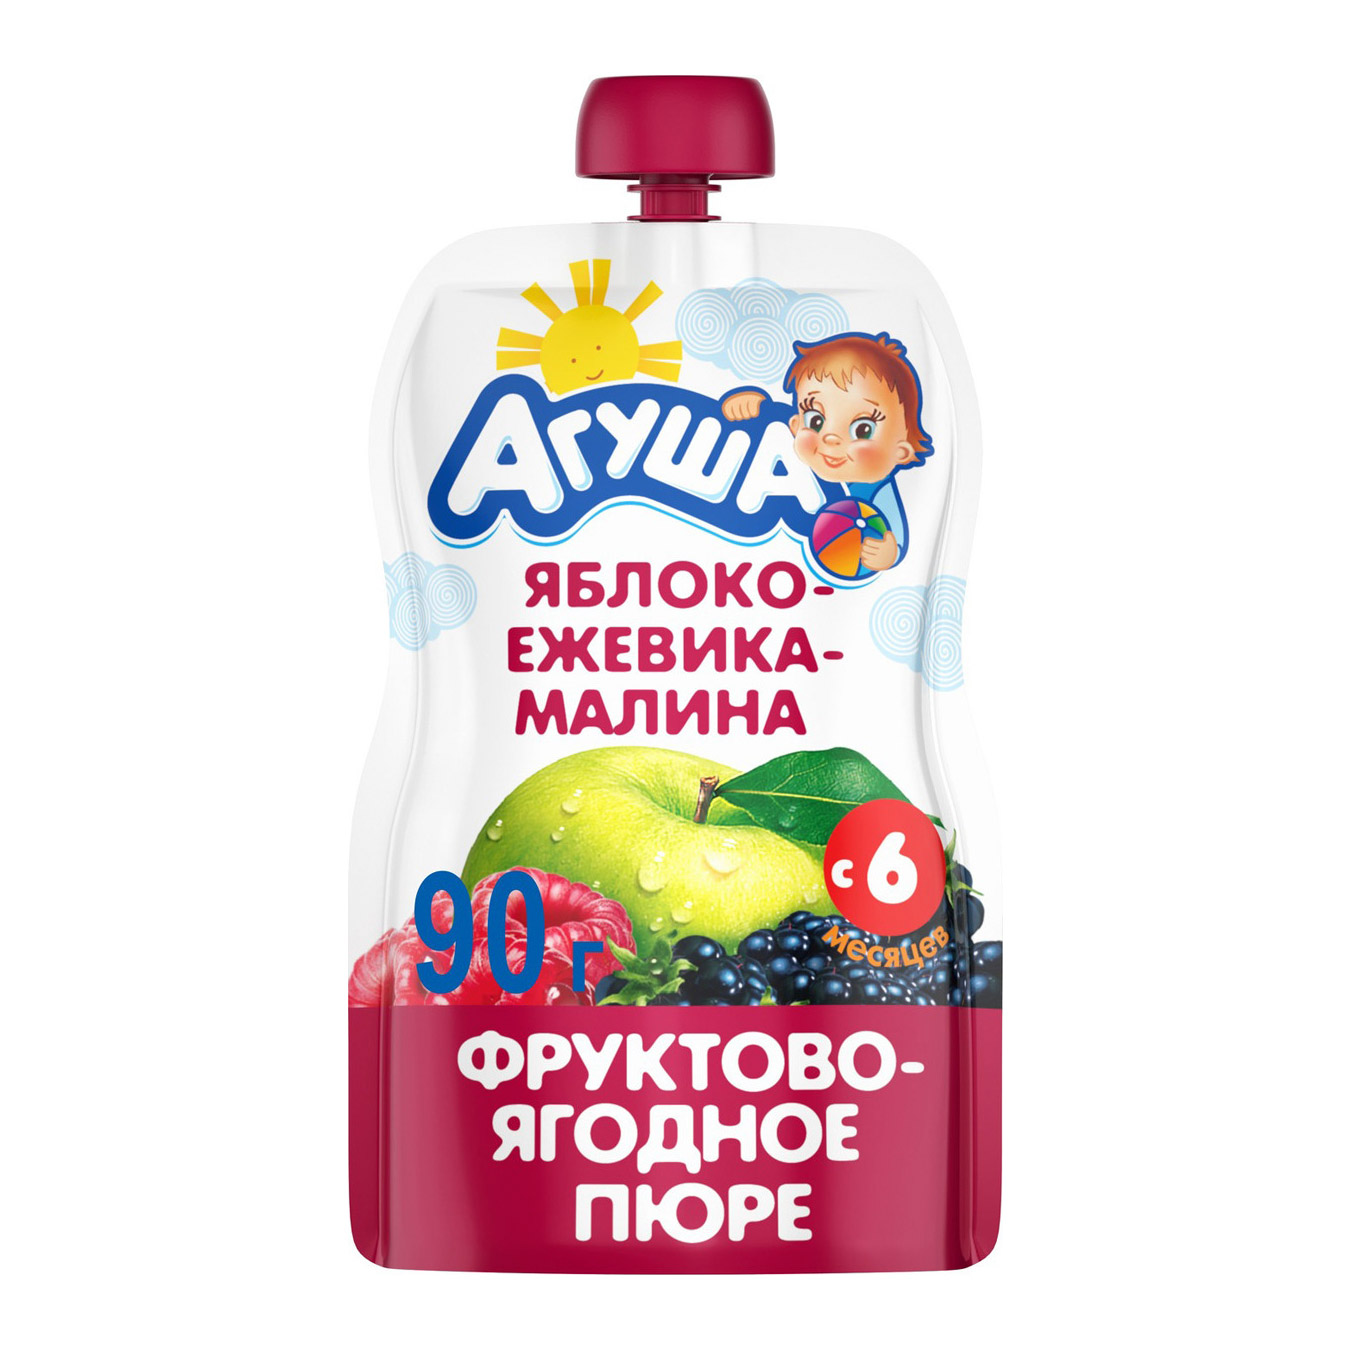 Пюре фруктово-ягодное Агуша Яблоко-Ежевика-Малина 90 г